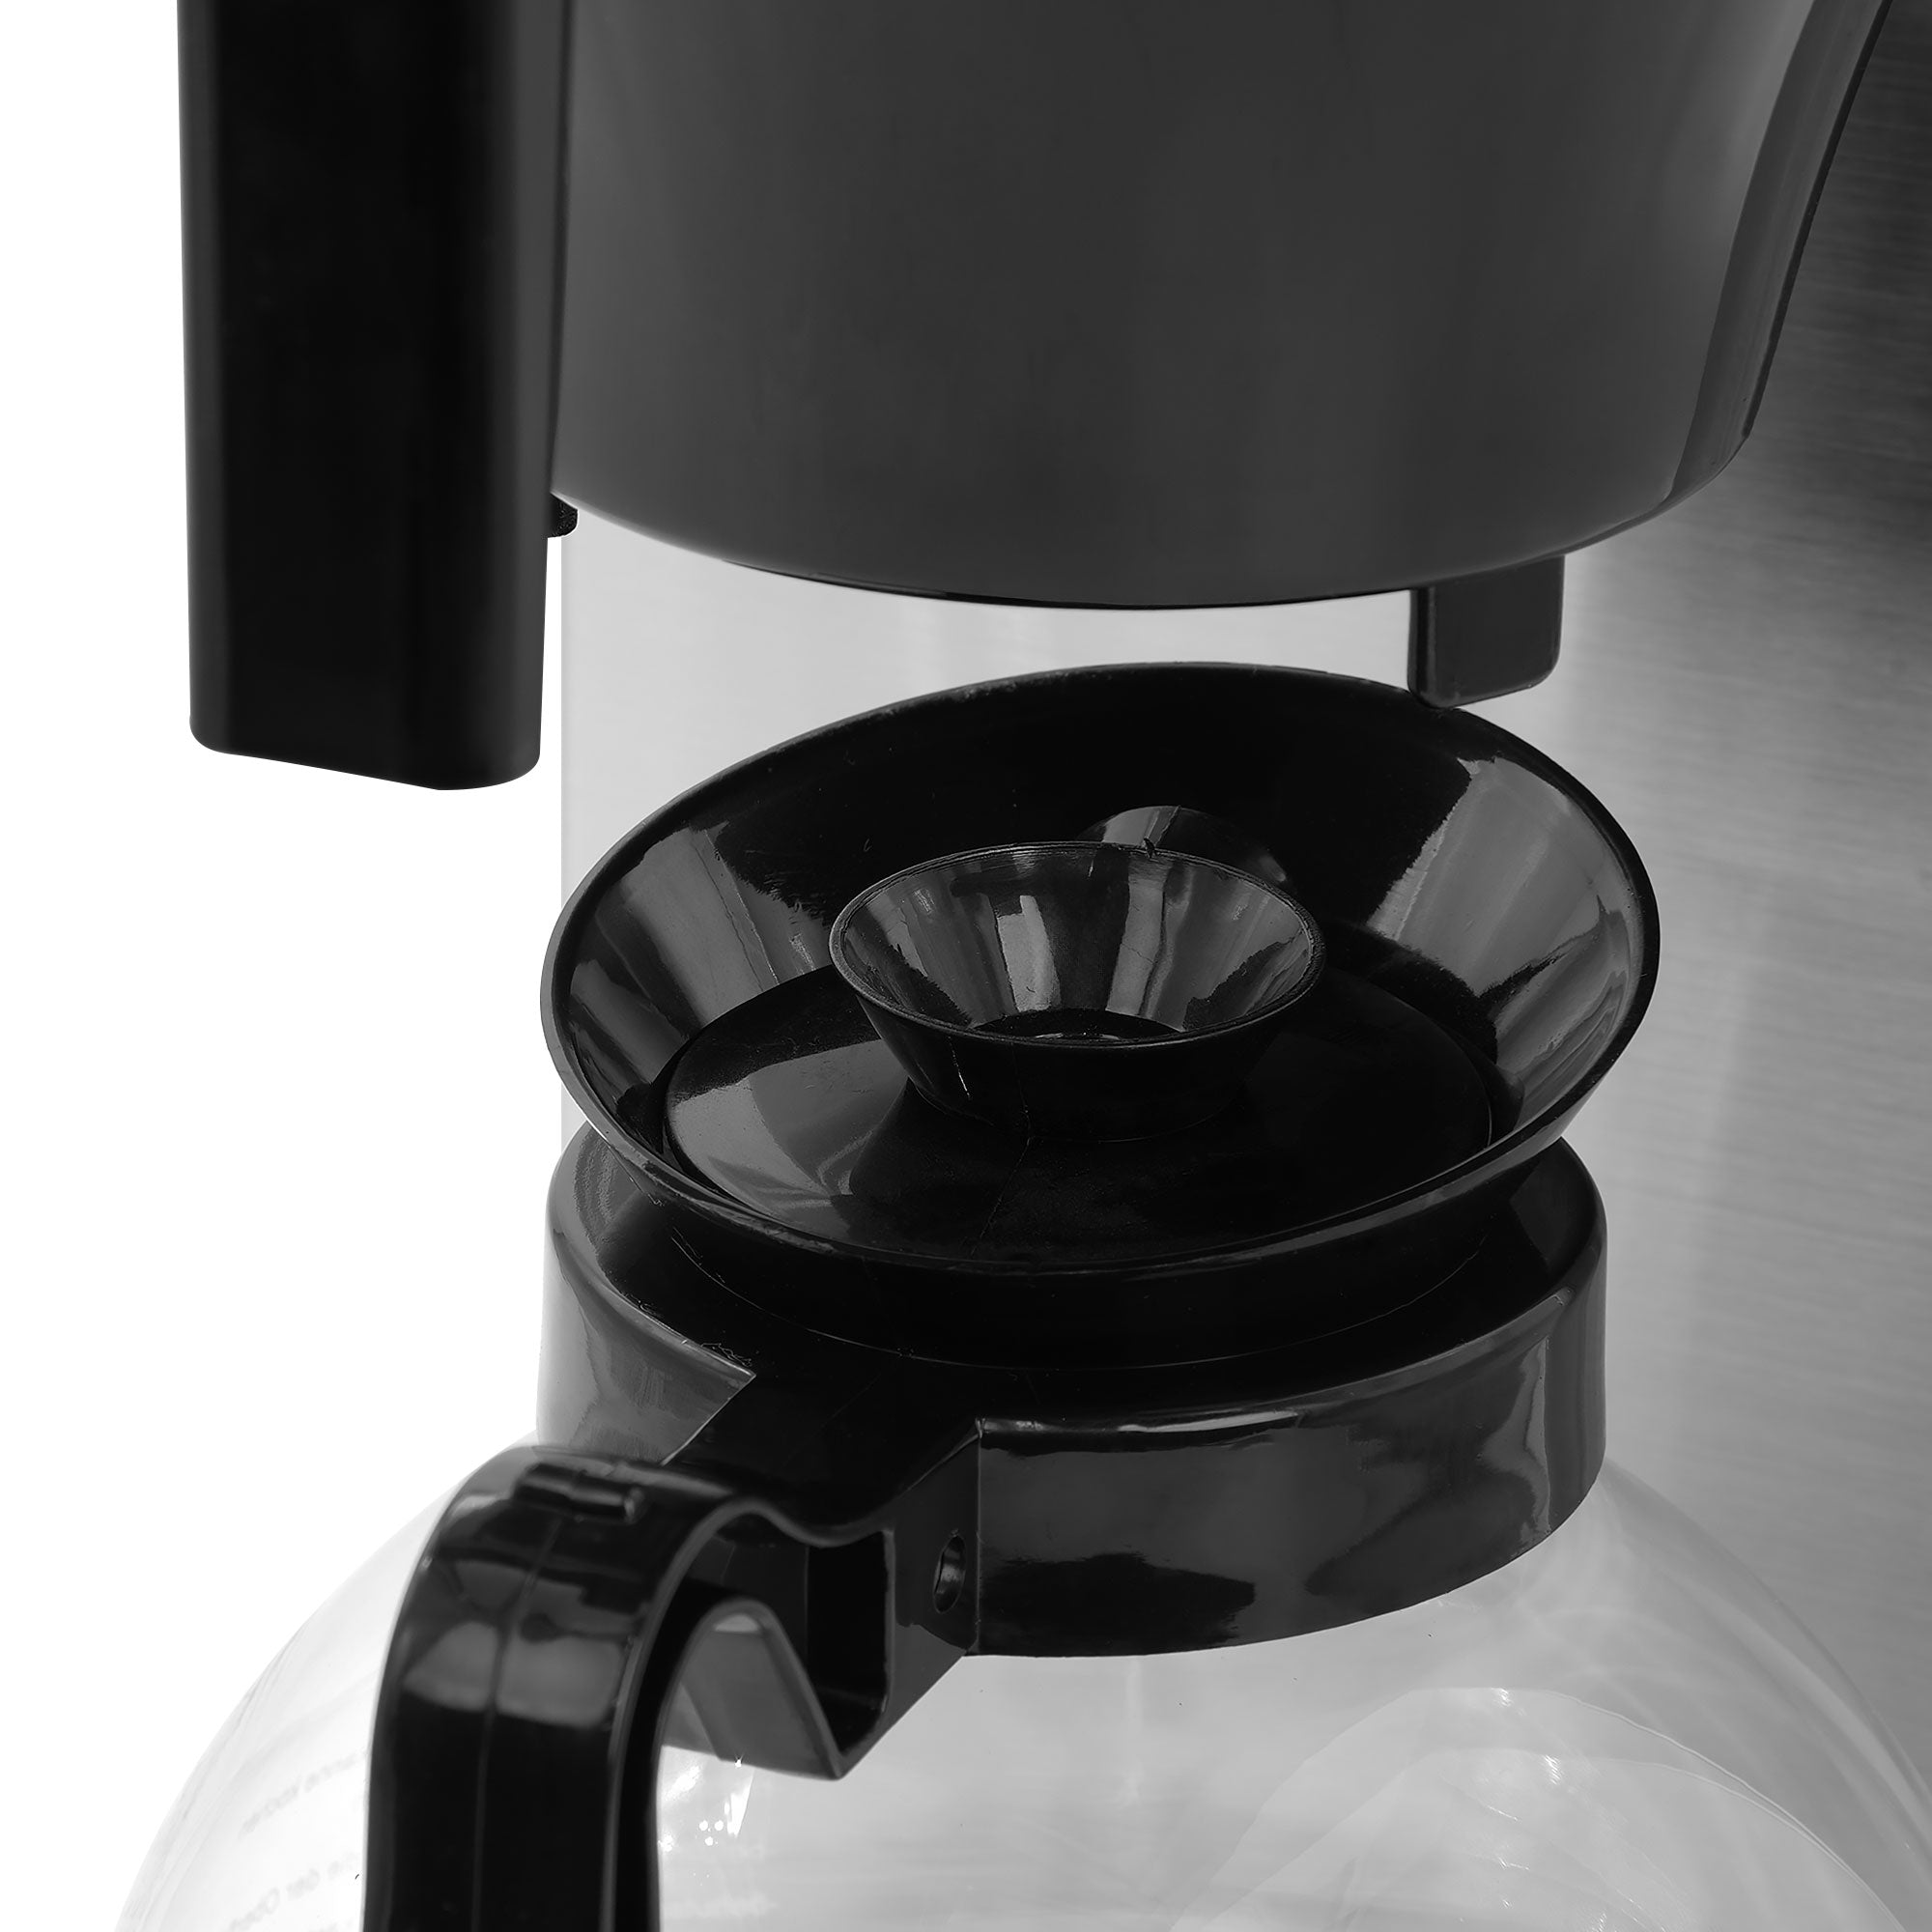 Filterkaffemaskine - 1,7 liter